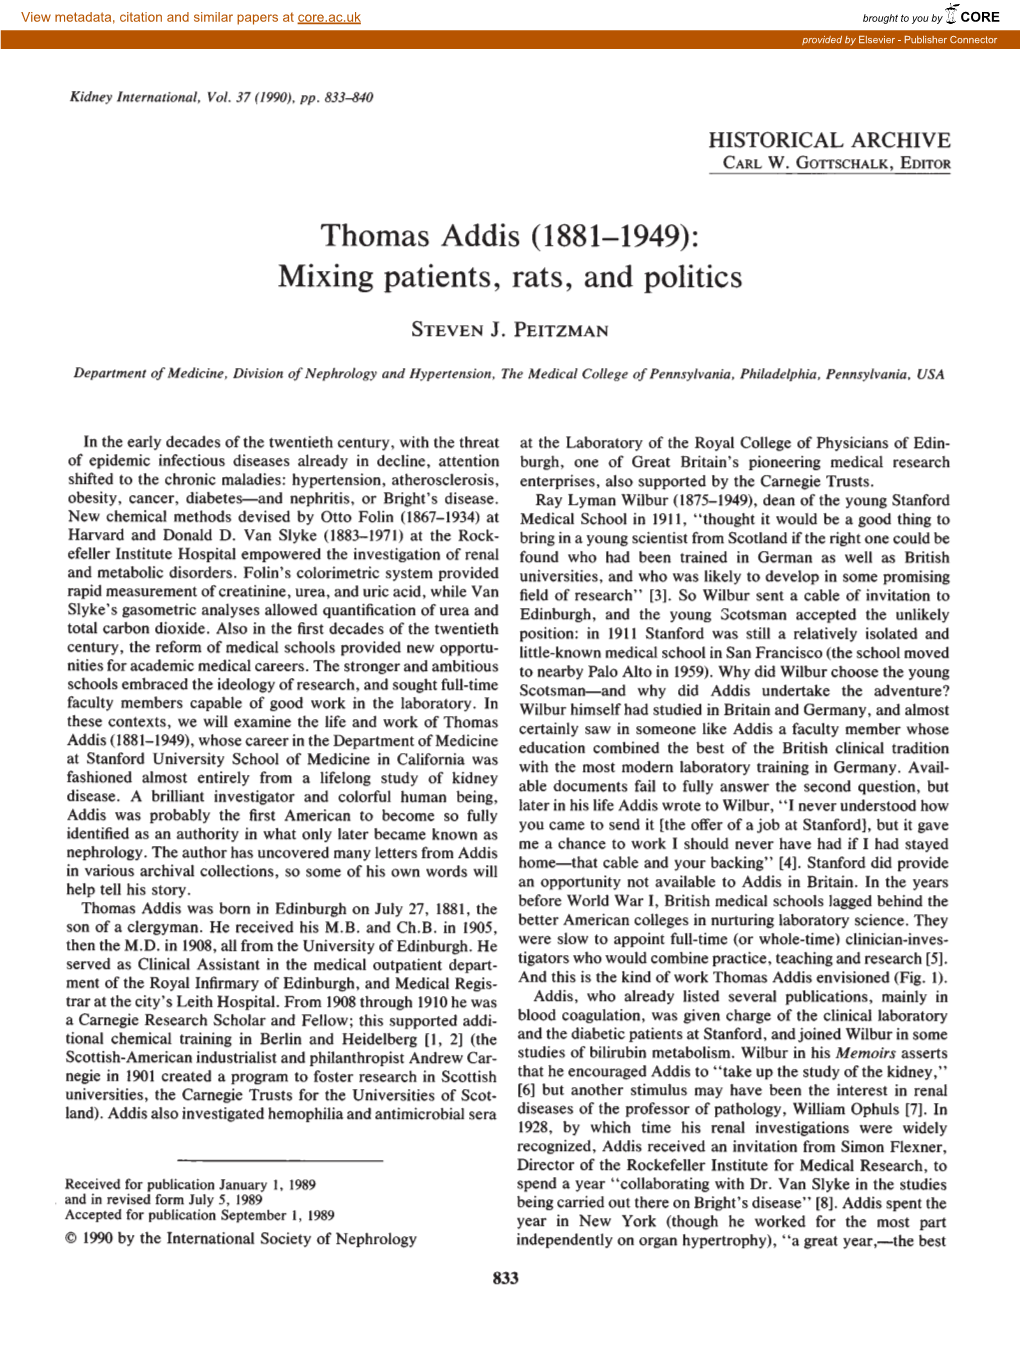 Thomas Addis (1881—1949): Mixing Patients, Rats, and Politics